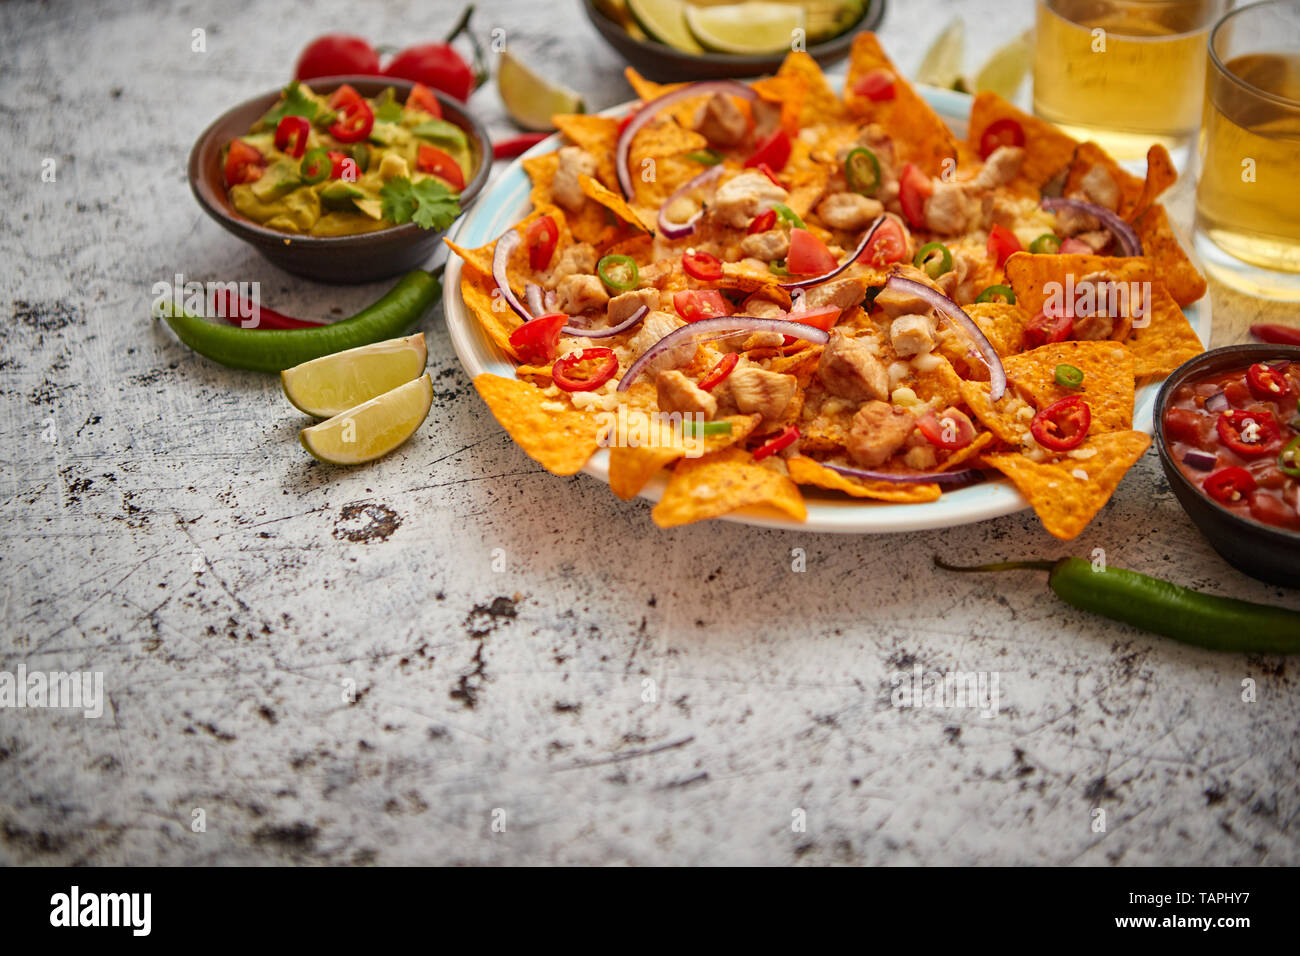 Mexikanischer Mais nacho würzige Chips mit geschmolzenem Käse serviert, Paprika, Tomaten, Bier und Salsas. Stockfoto